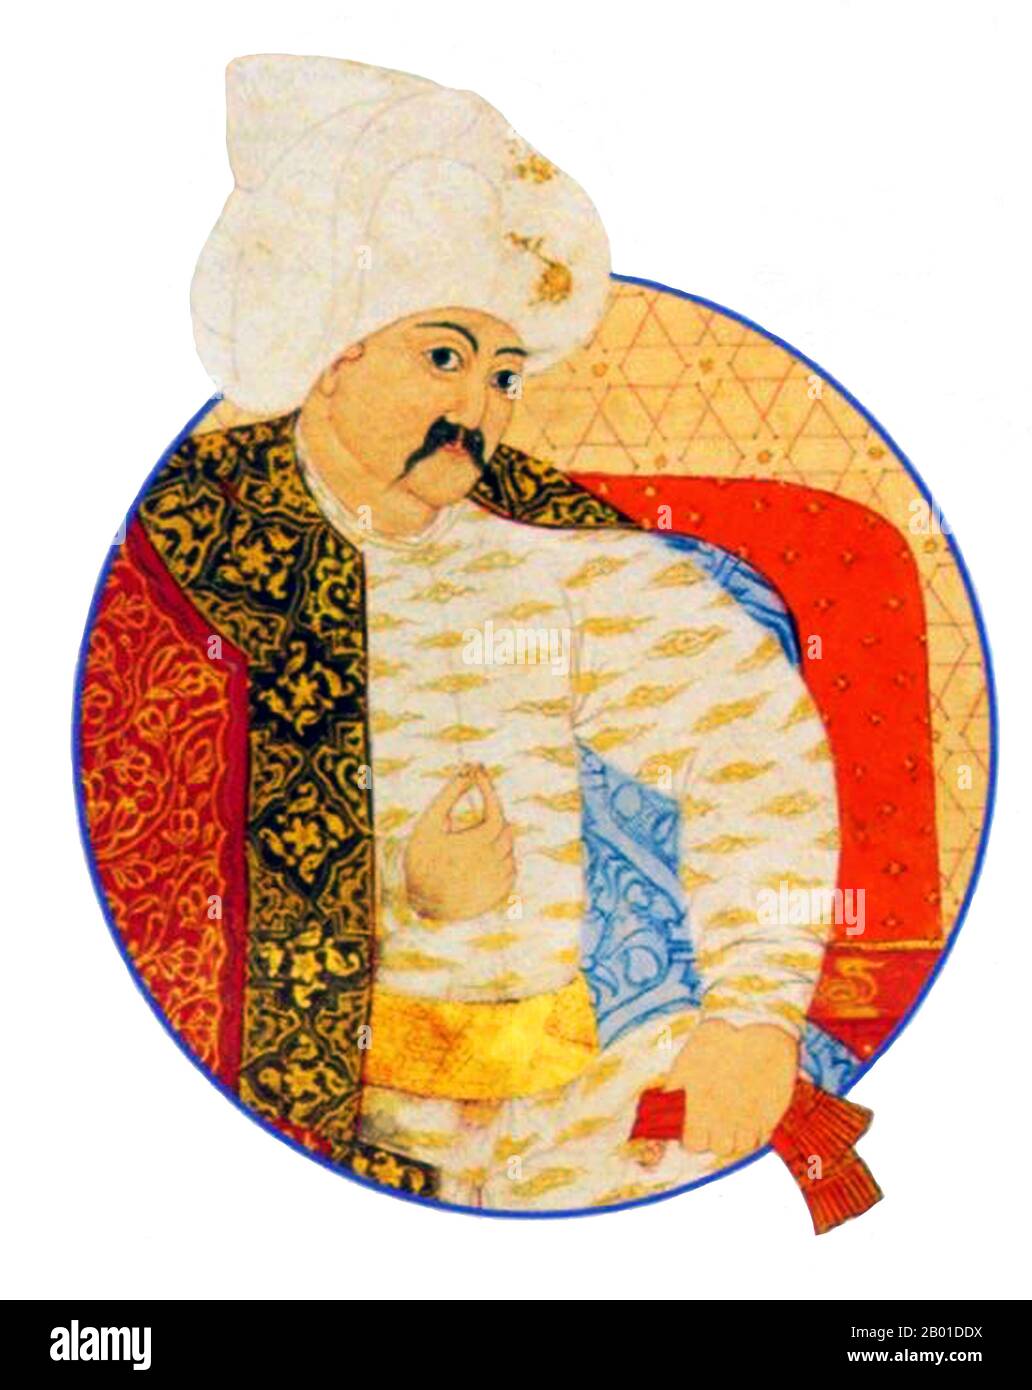 Turquie: Selim I, sultan de l'Empire ottoman (10 octobre 1470 - 22 septembre 1520). Peinture miniature, c. 1512-1520. Selim I, Yavuz Sultân Selim Khan, surnommé Yavuz 'la Stern' ou 'le Resolute', mais souvent rendu en anglais comme 'la sinistre', a été sultan de l'Empire ottoman de 1512 à 1520. Il a également été le premier sultan ottoman à assumer le titre de Calife de l'Islam. Il a reçu le titre de «Hâdim ül Haramain ish Sharifain» (serviteur des villes saintes de la Mecque et de Médina), par le Sharif de la Mecque en 1517. Selim a porté l'empire à la direction de la branche sunnite de l'Islam. Banque D'Images